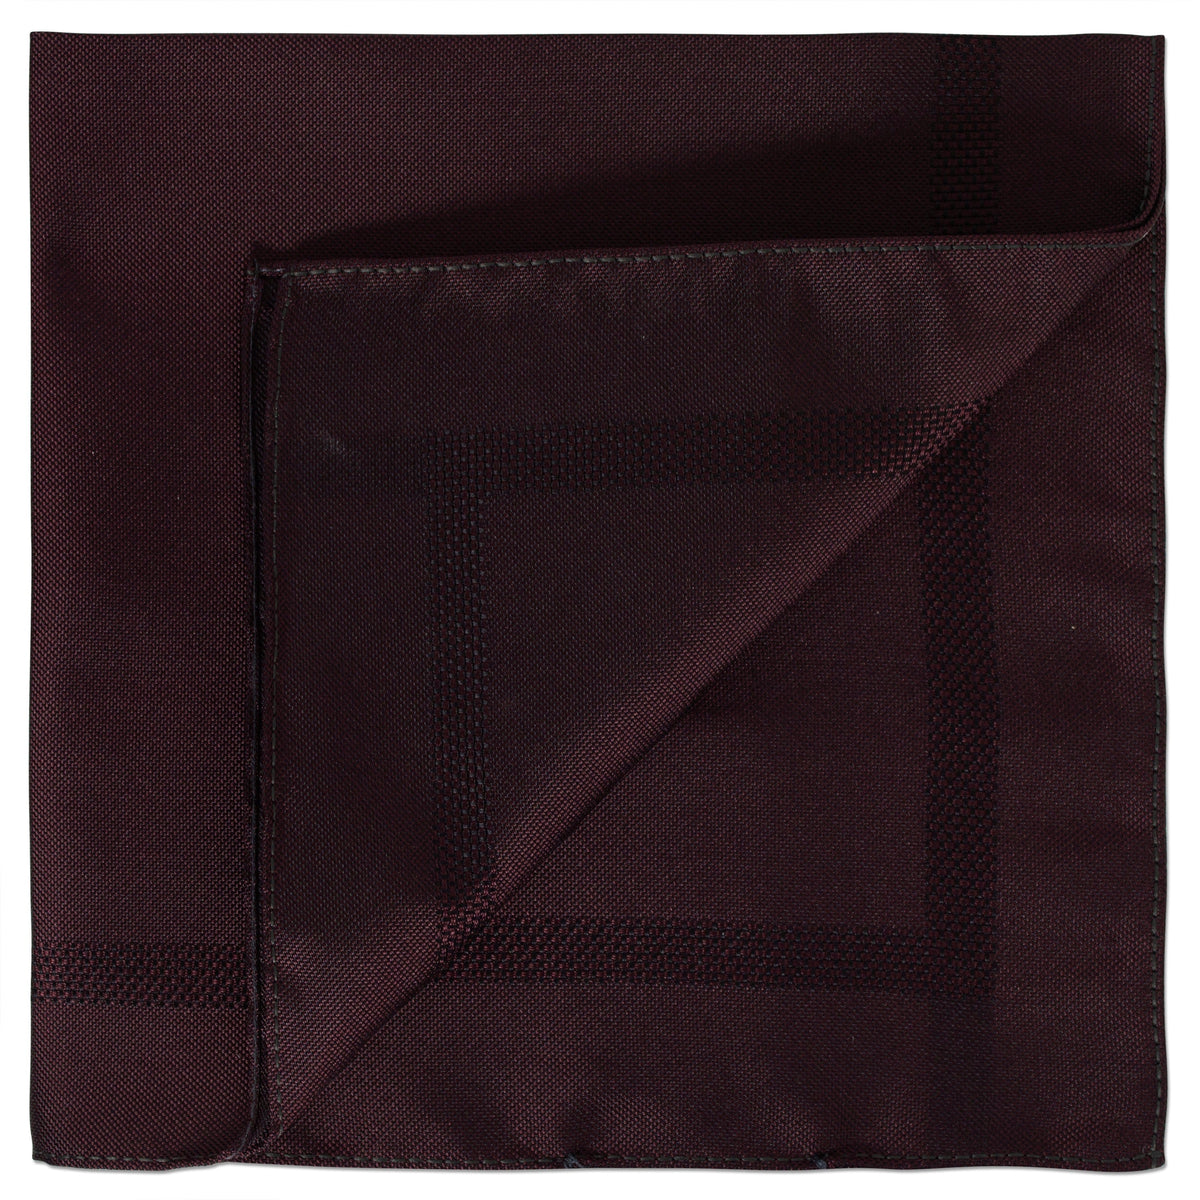 Ermenegildo Zegna Plain Silk Pocket Square with Woven Texture in Burgundy-Pocket Squares-Ermenegildo Zegna-Cufflinks.com.sg